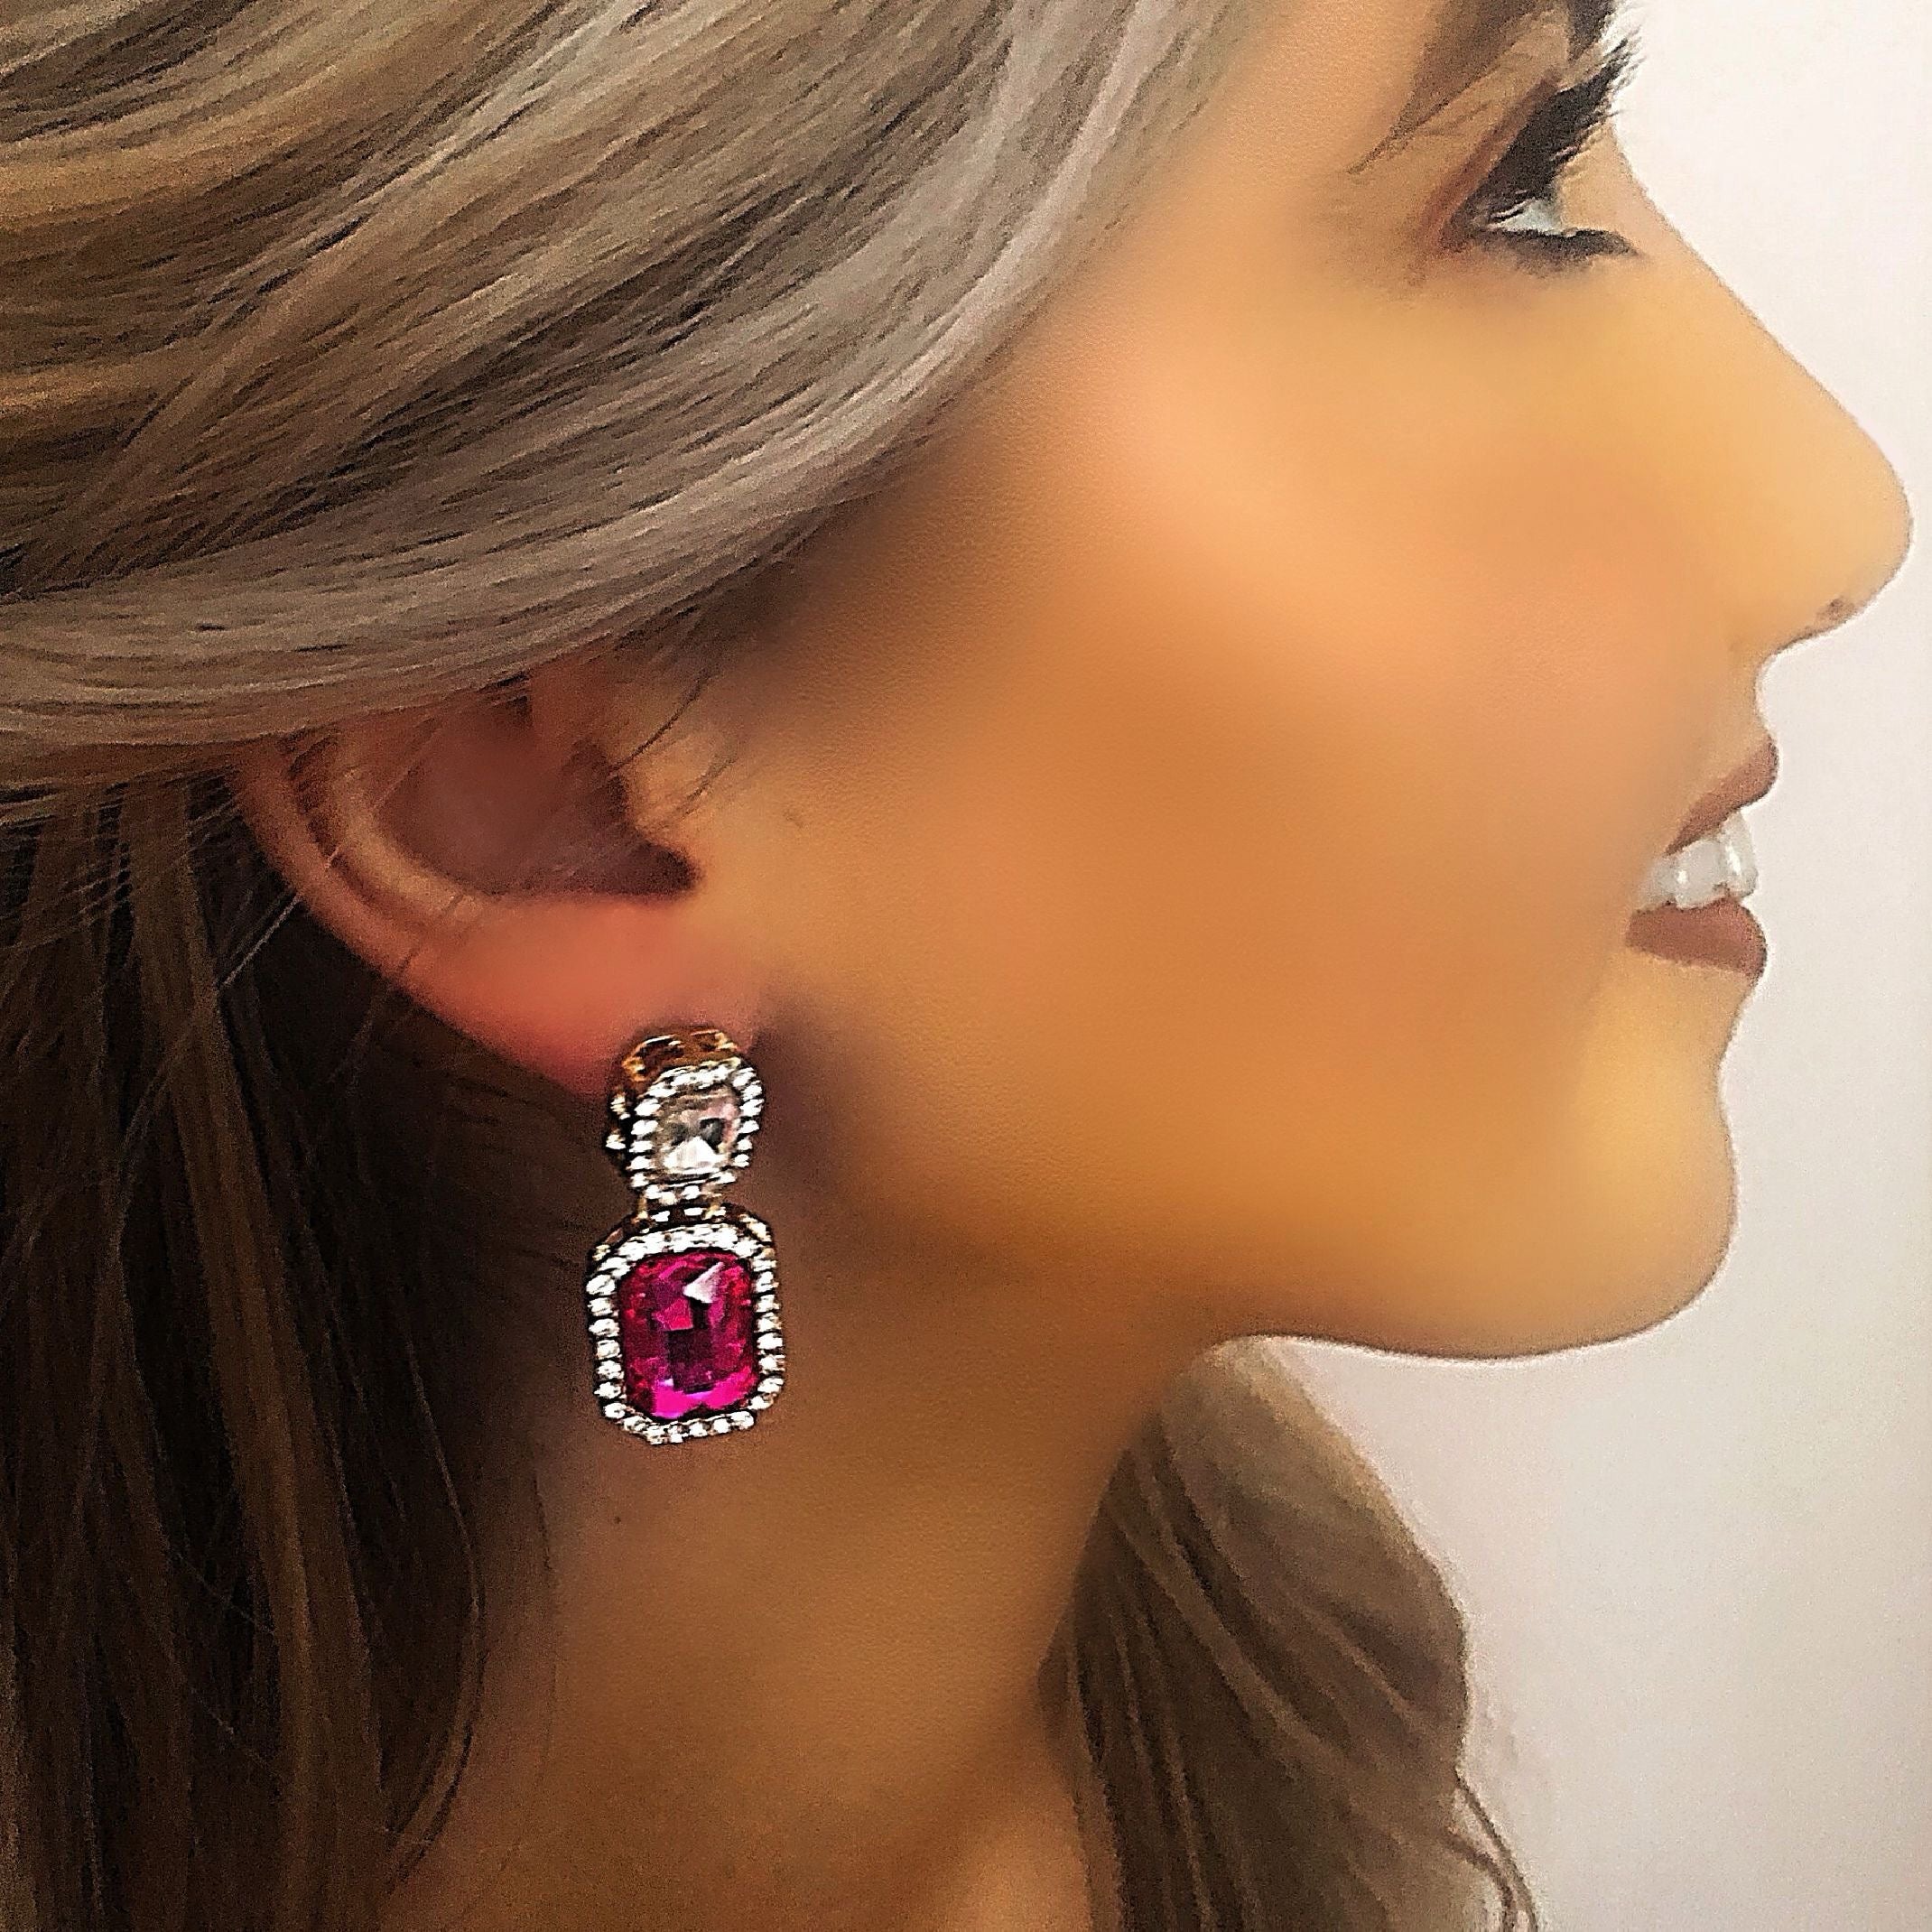 Hot pink jewel earrings